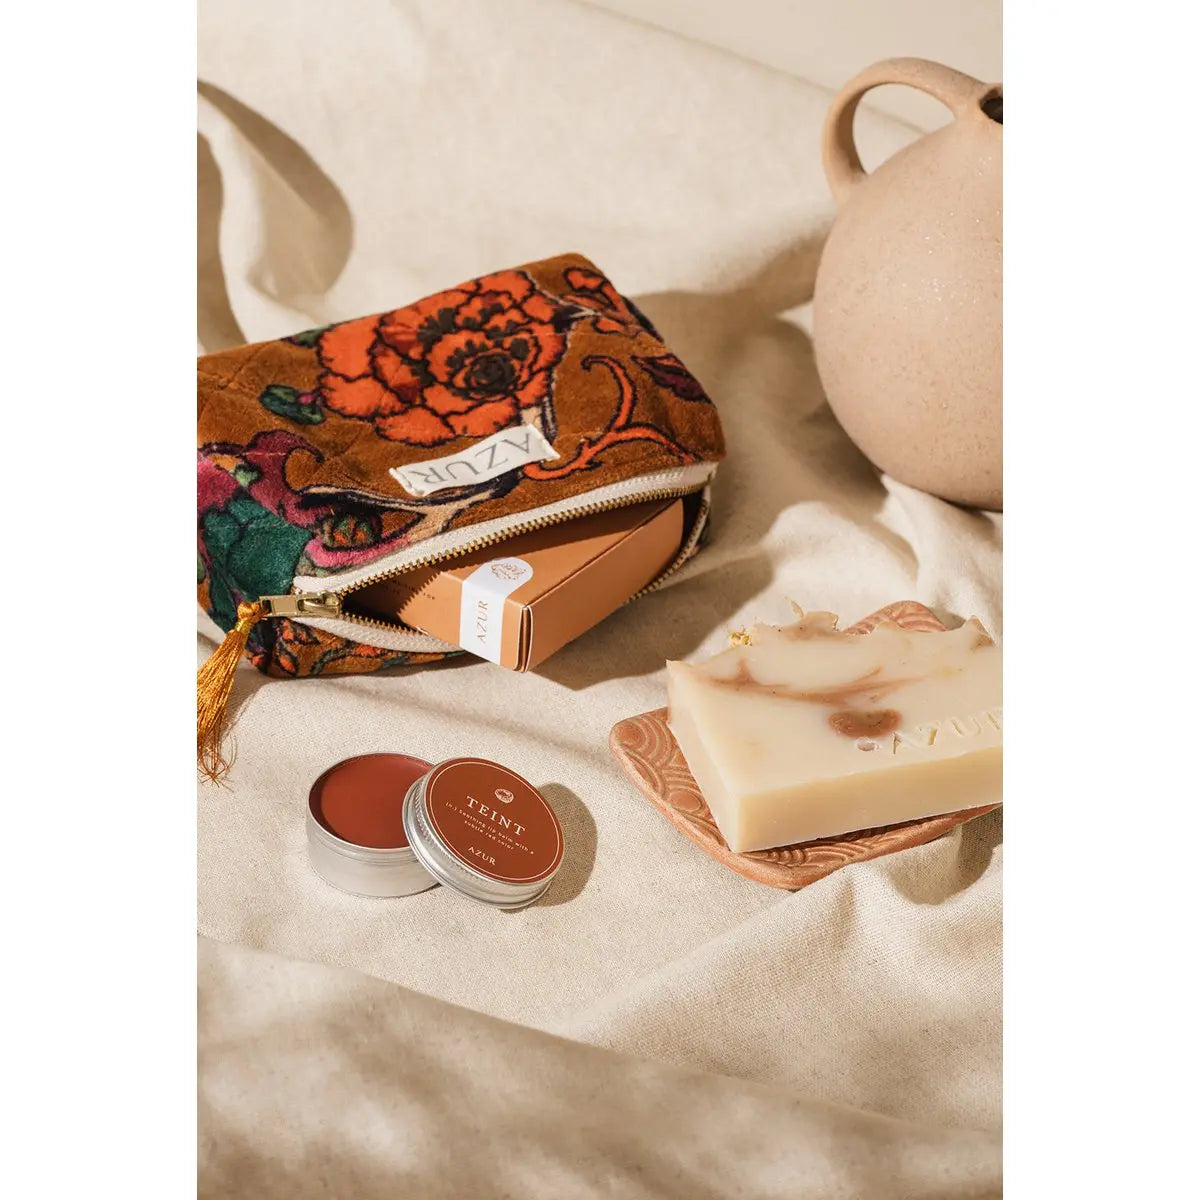 Azur makeup tas rood handgemaakteskincare